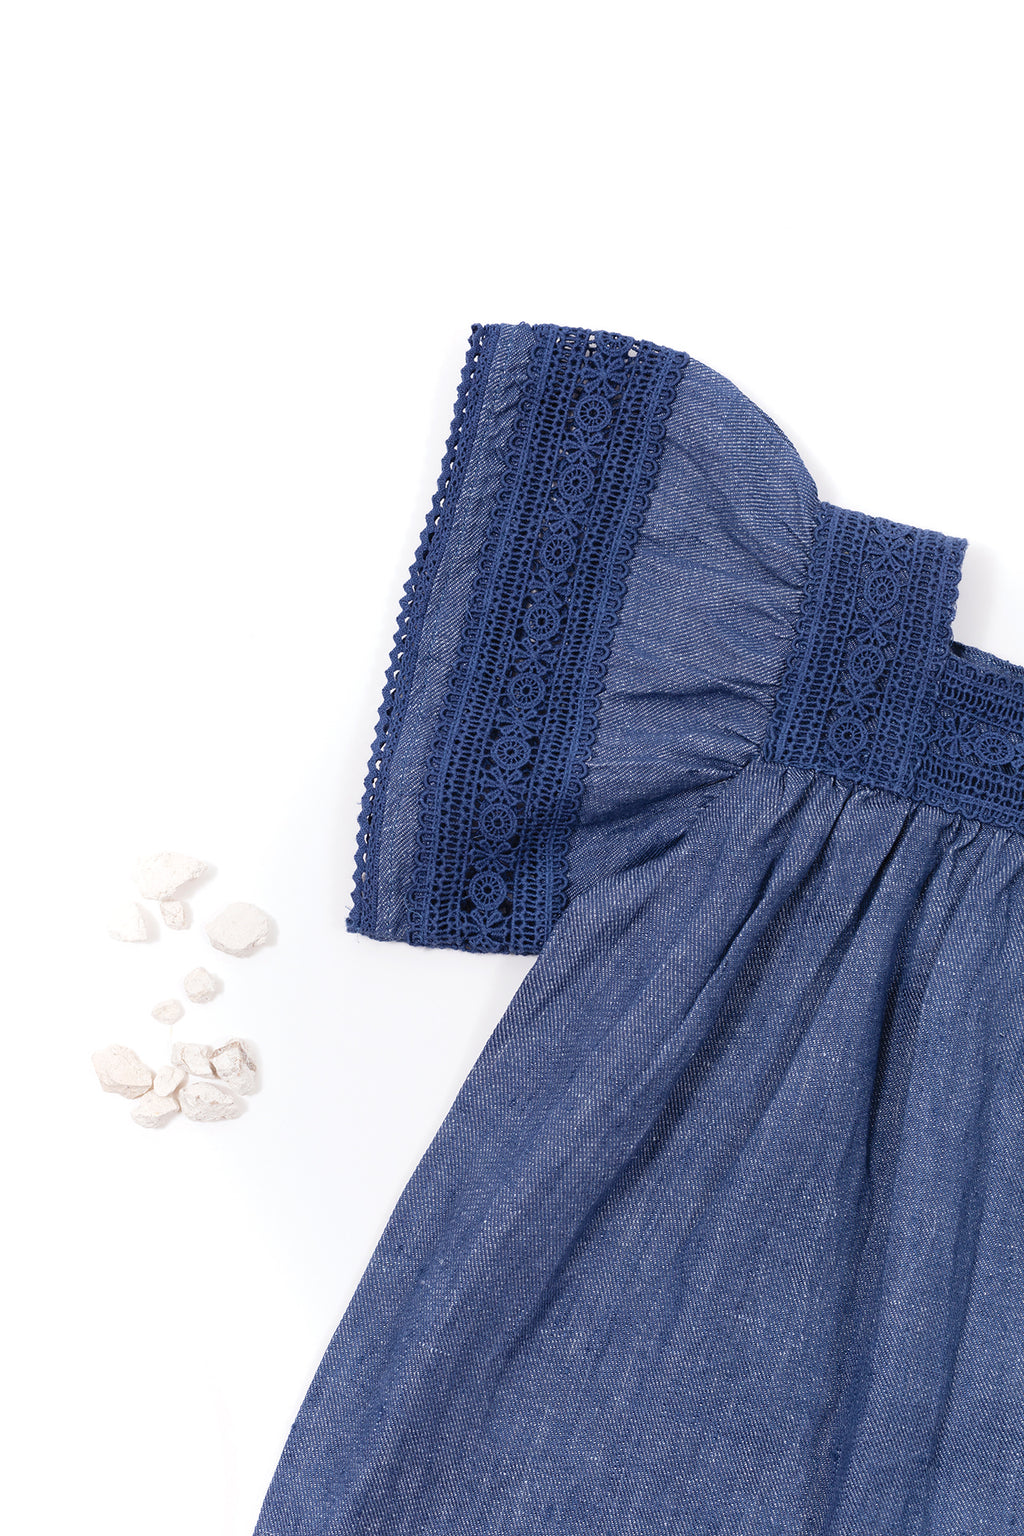 Dress - Indigo Linen